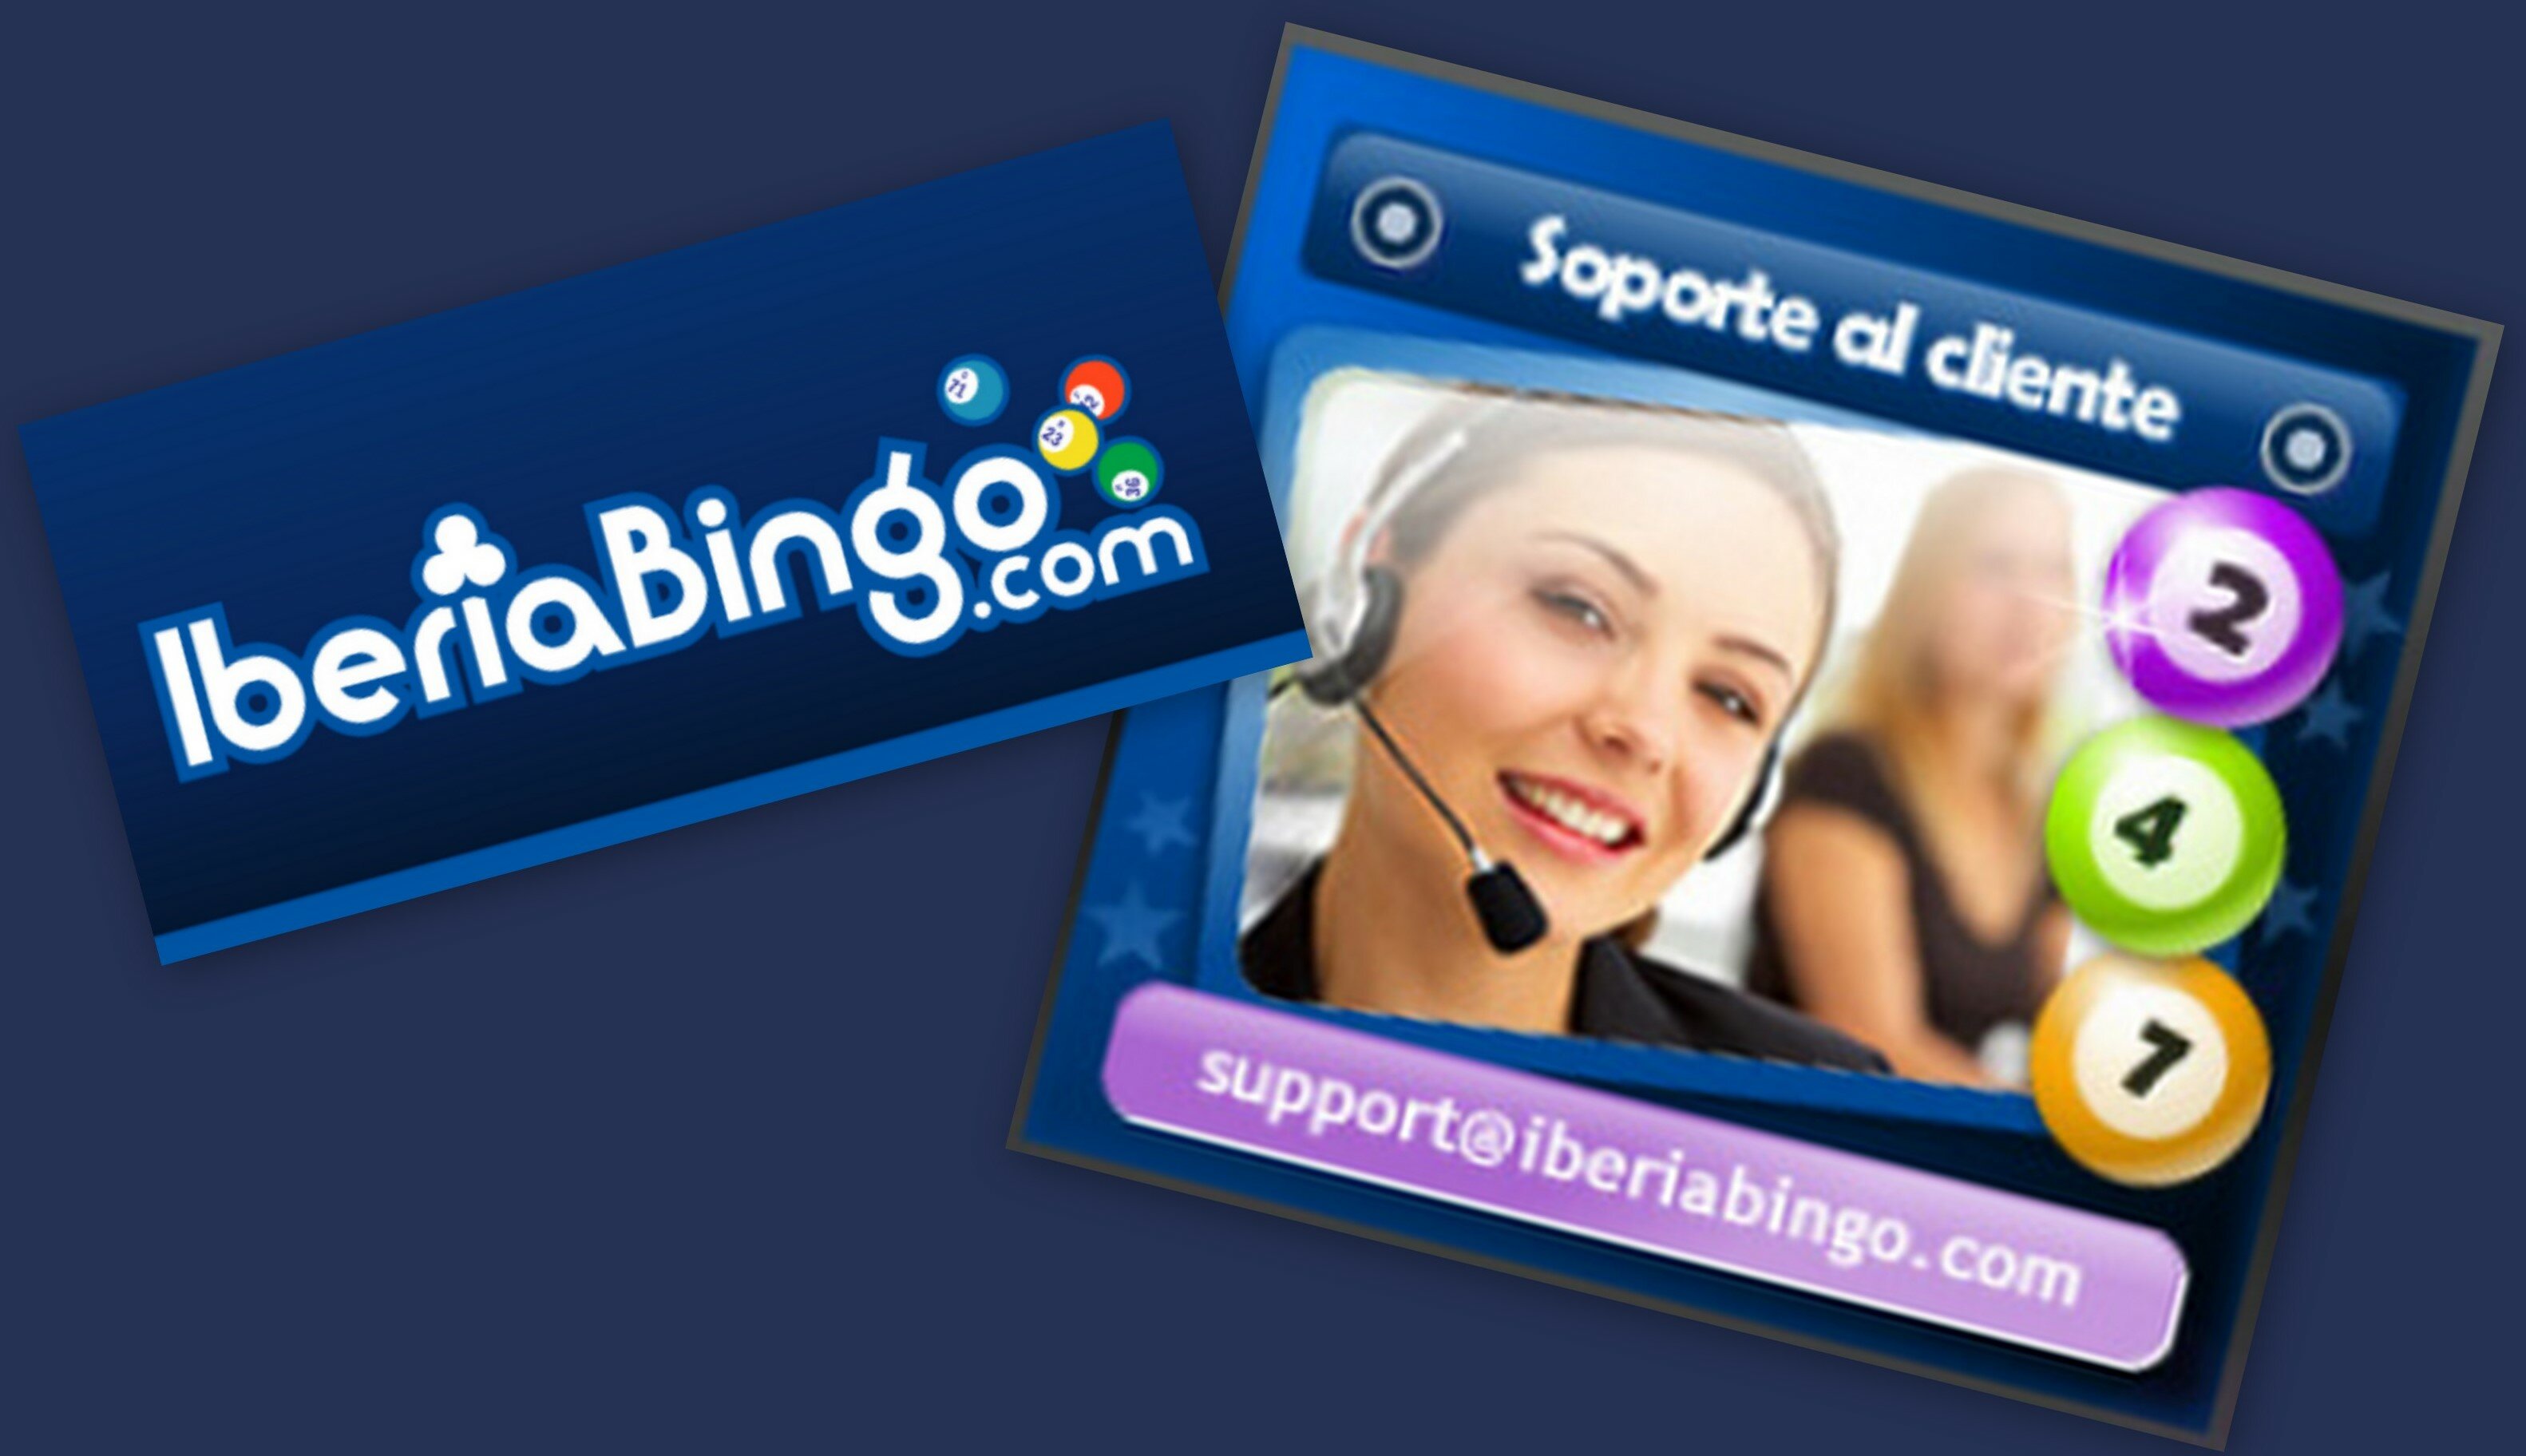 Soporte al cliente Iberia bingo2 ¿Cómo recuperar la contraseña en IberiaBingo?